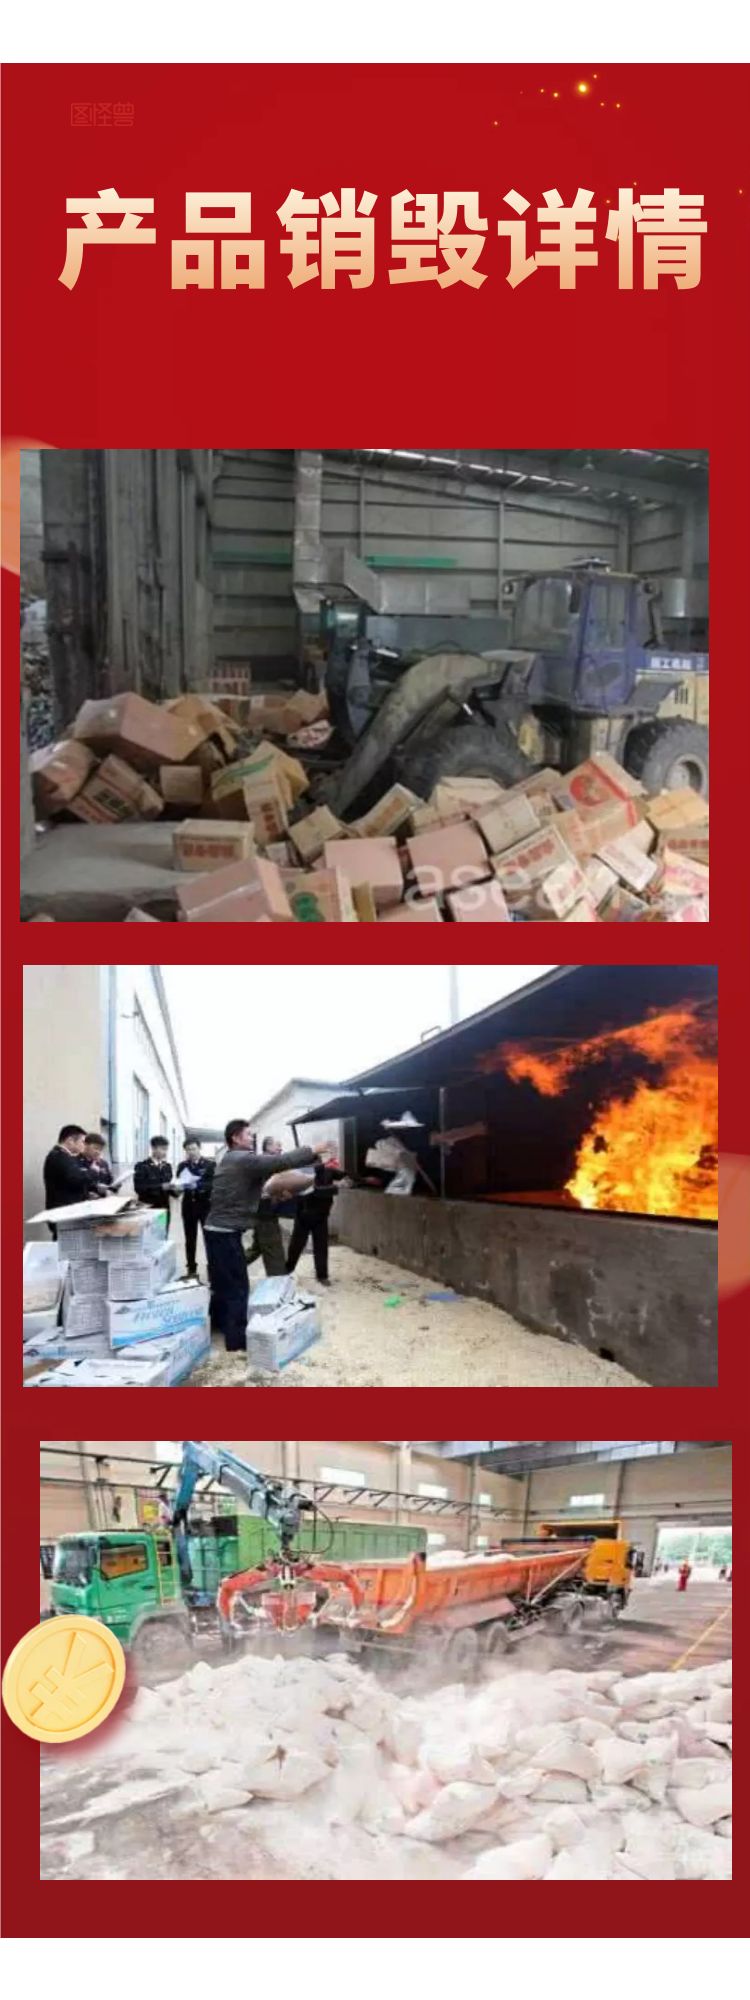 广州天河区废弃玩具销毁报废单位环保焚烧无害化处置